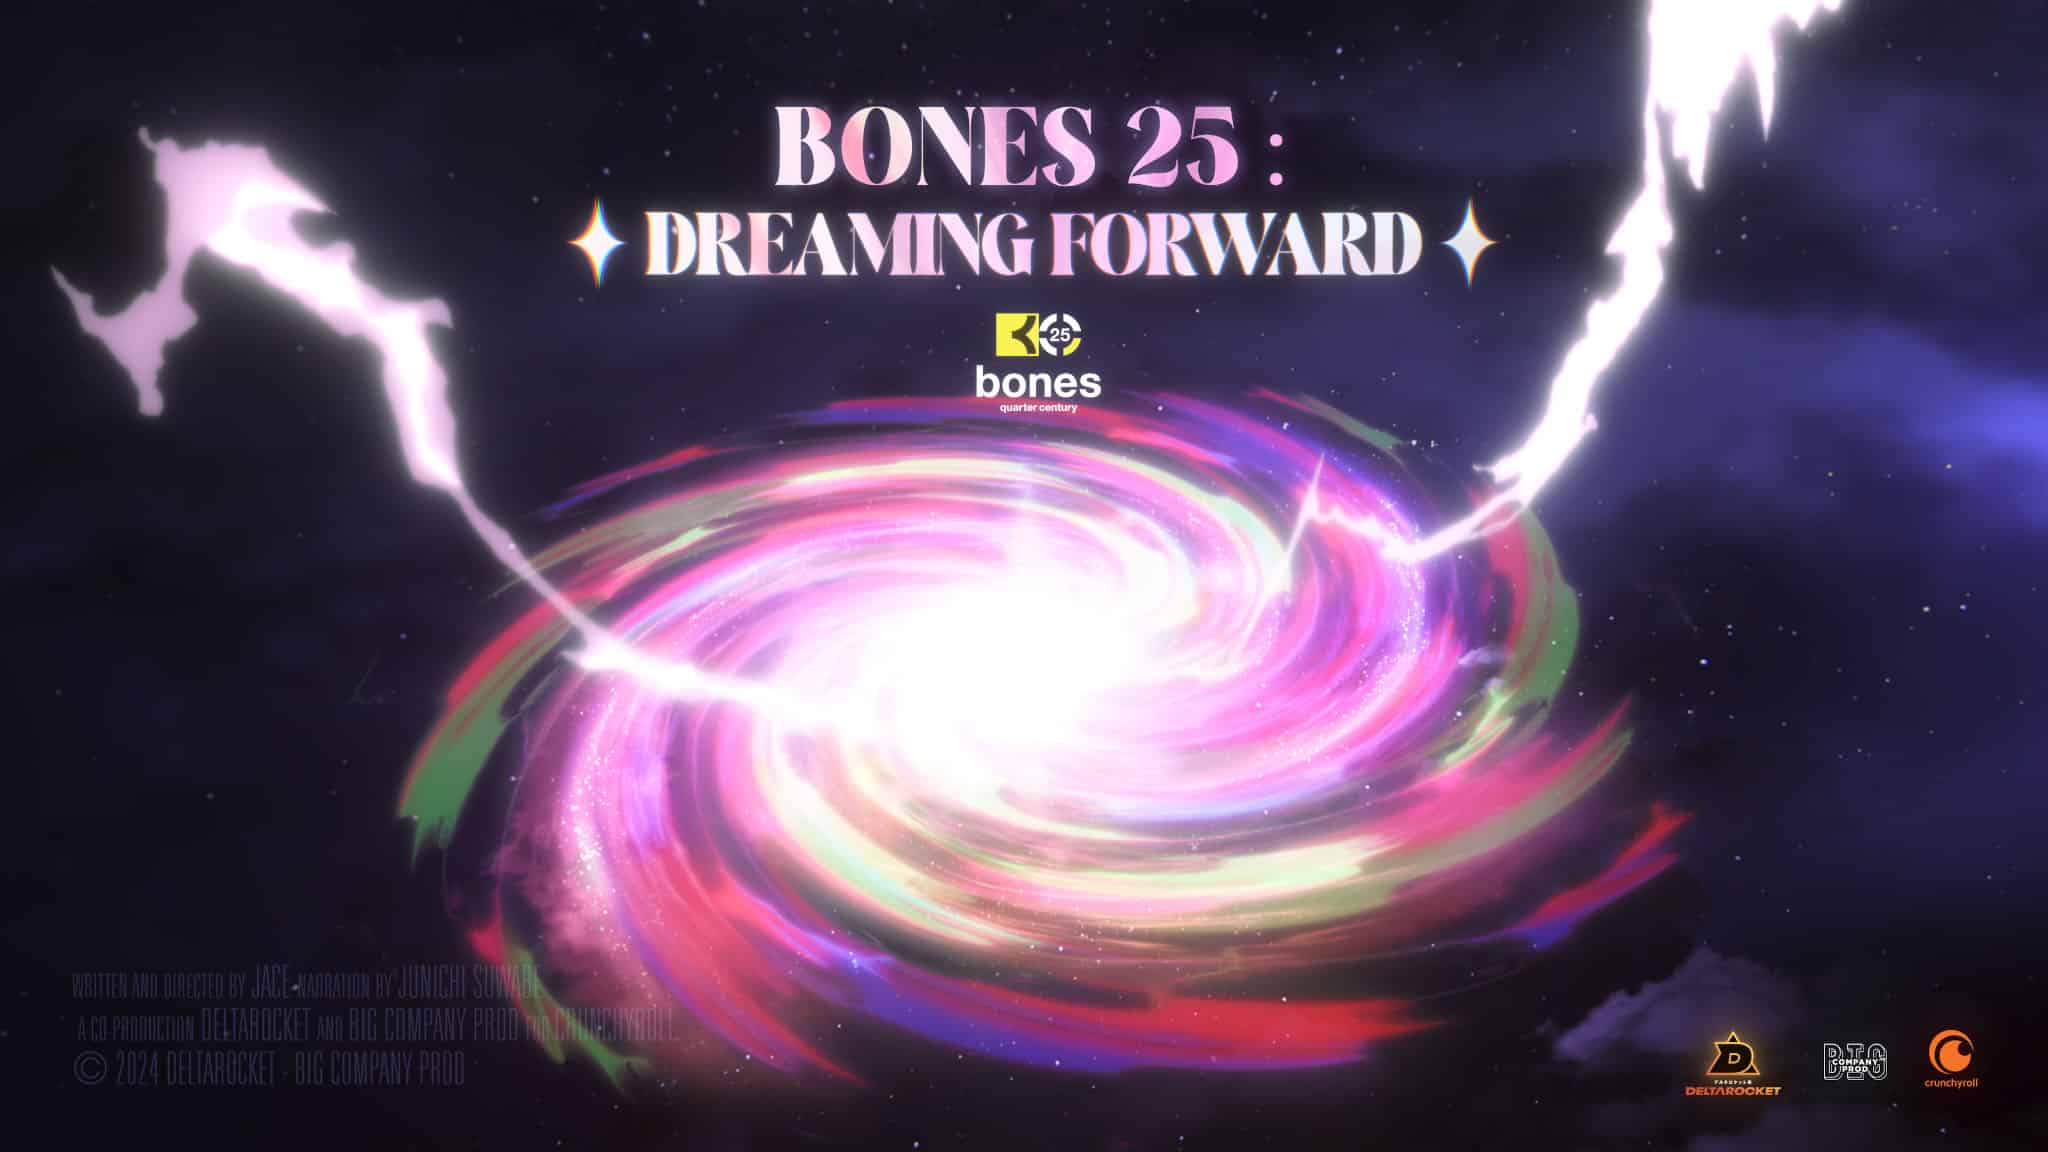 Annonce du documentaire BONES 25 DREAMING FORWARD, un docu centré sur le studio BONES et produit par Crunchyroll.